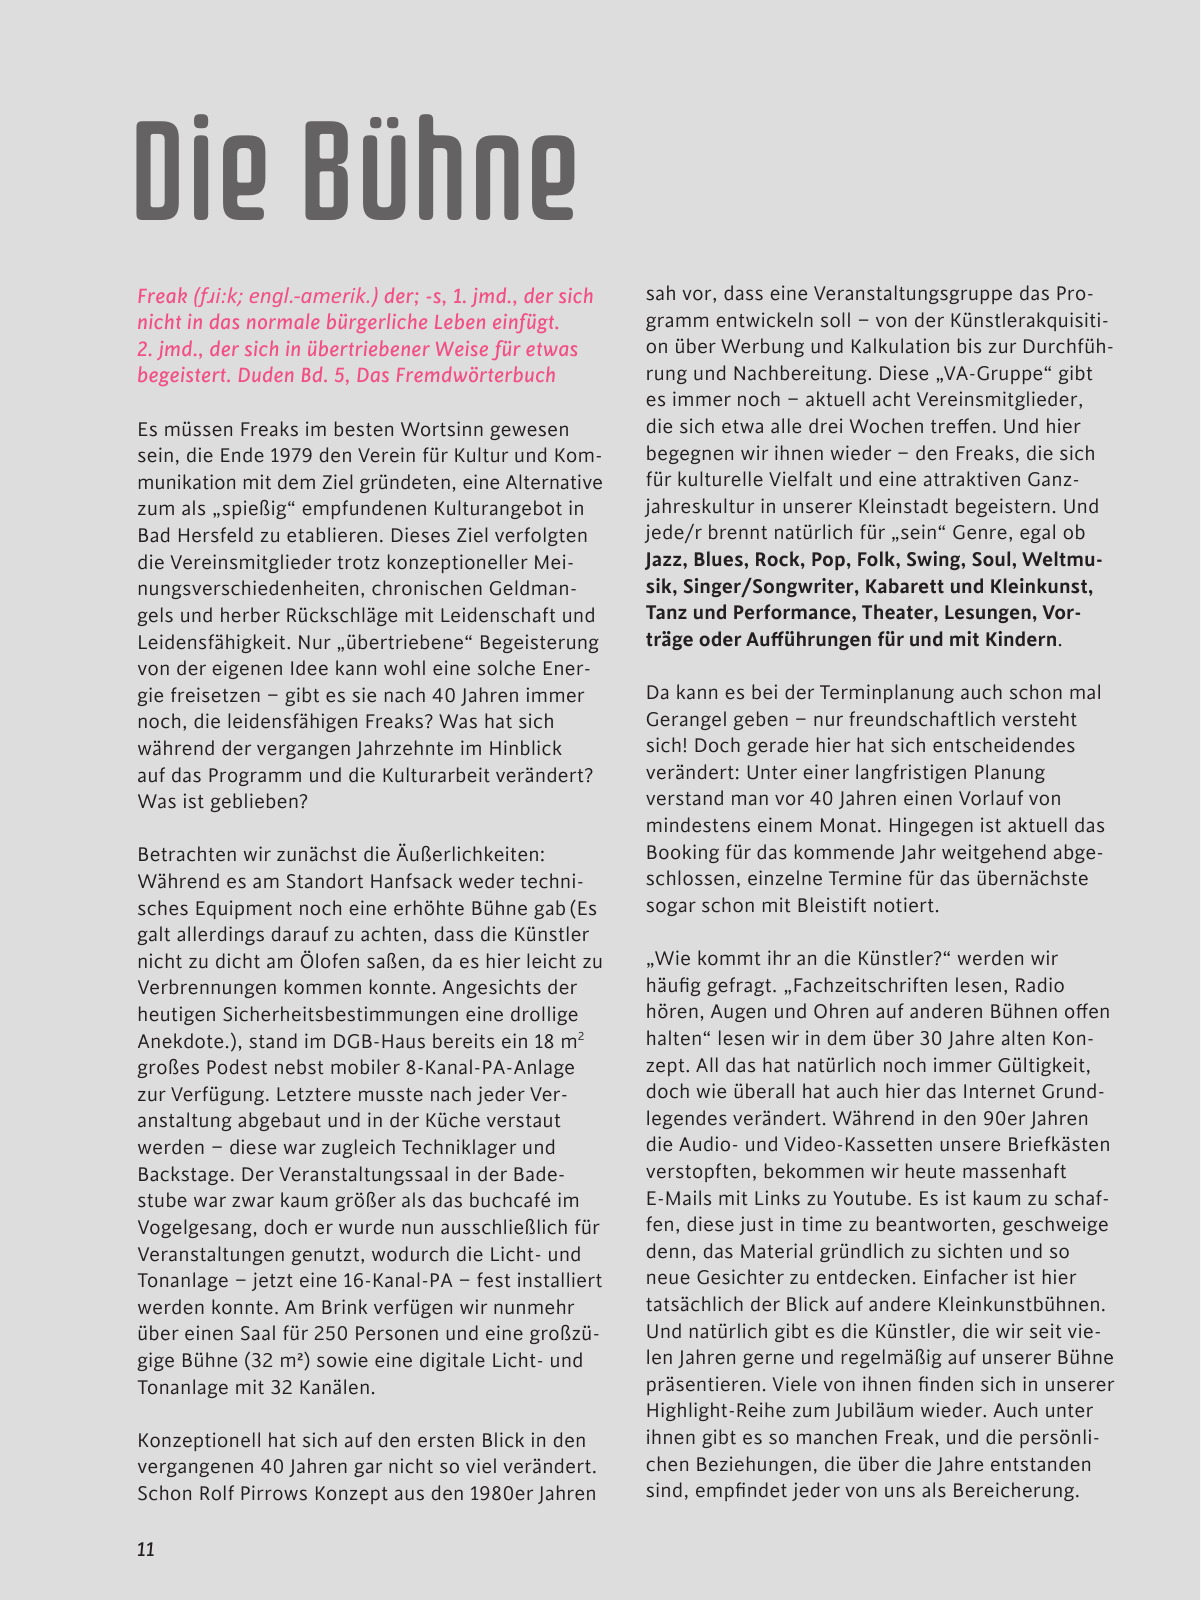 Vorschau buchcafe Festschrift 2019 Seite 11